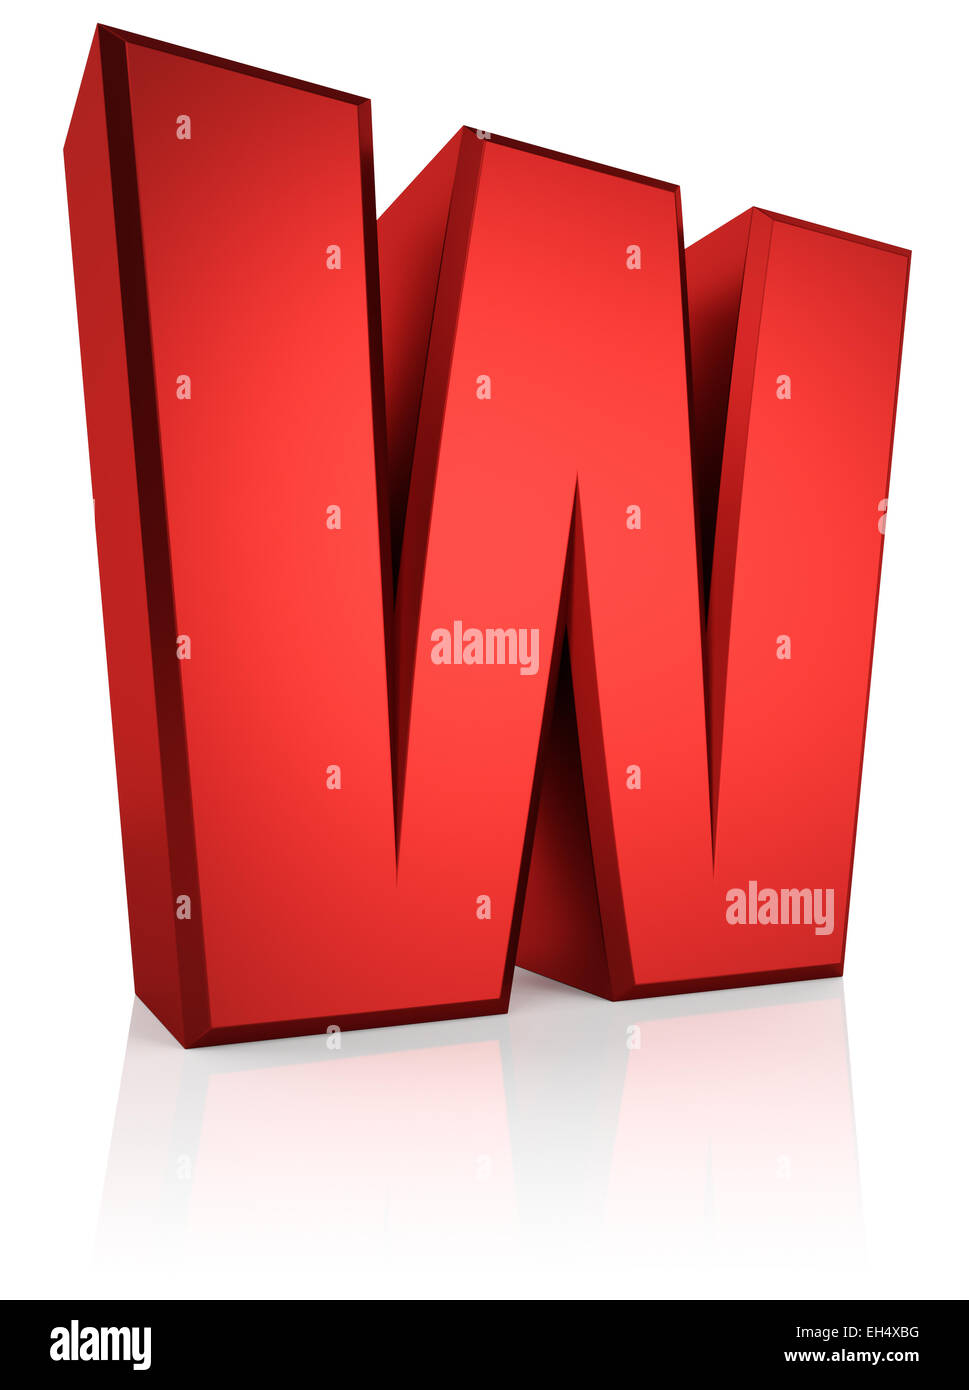 Nedrustning udskille tom Red w letter hi-res stock photography and images - Alamy